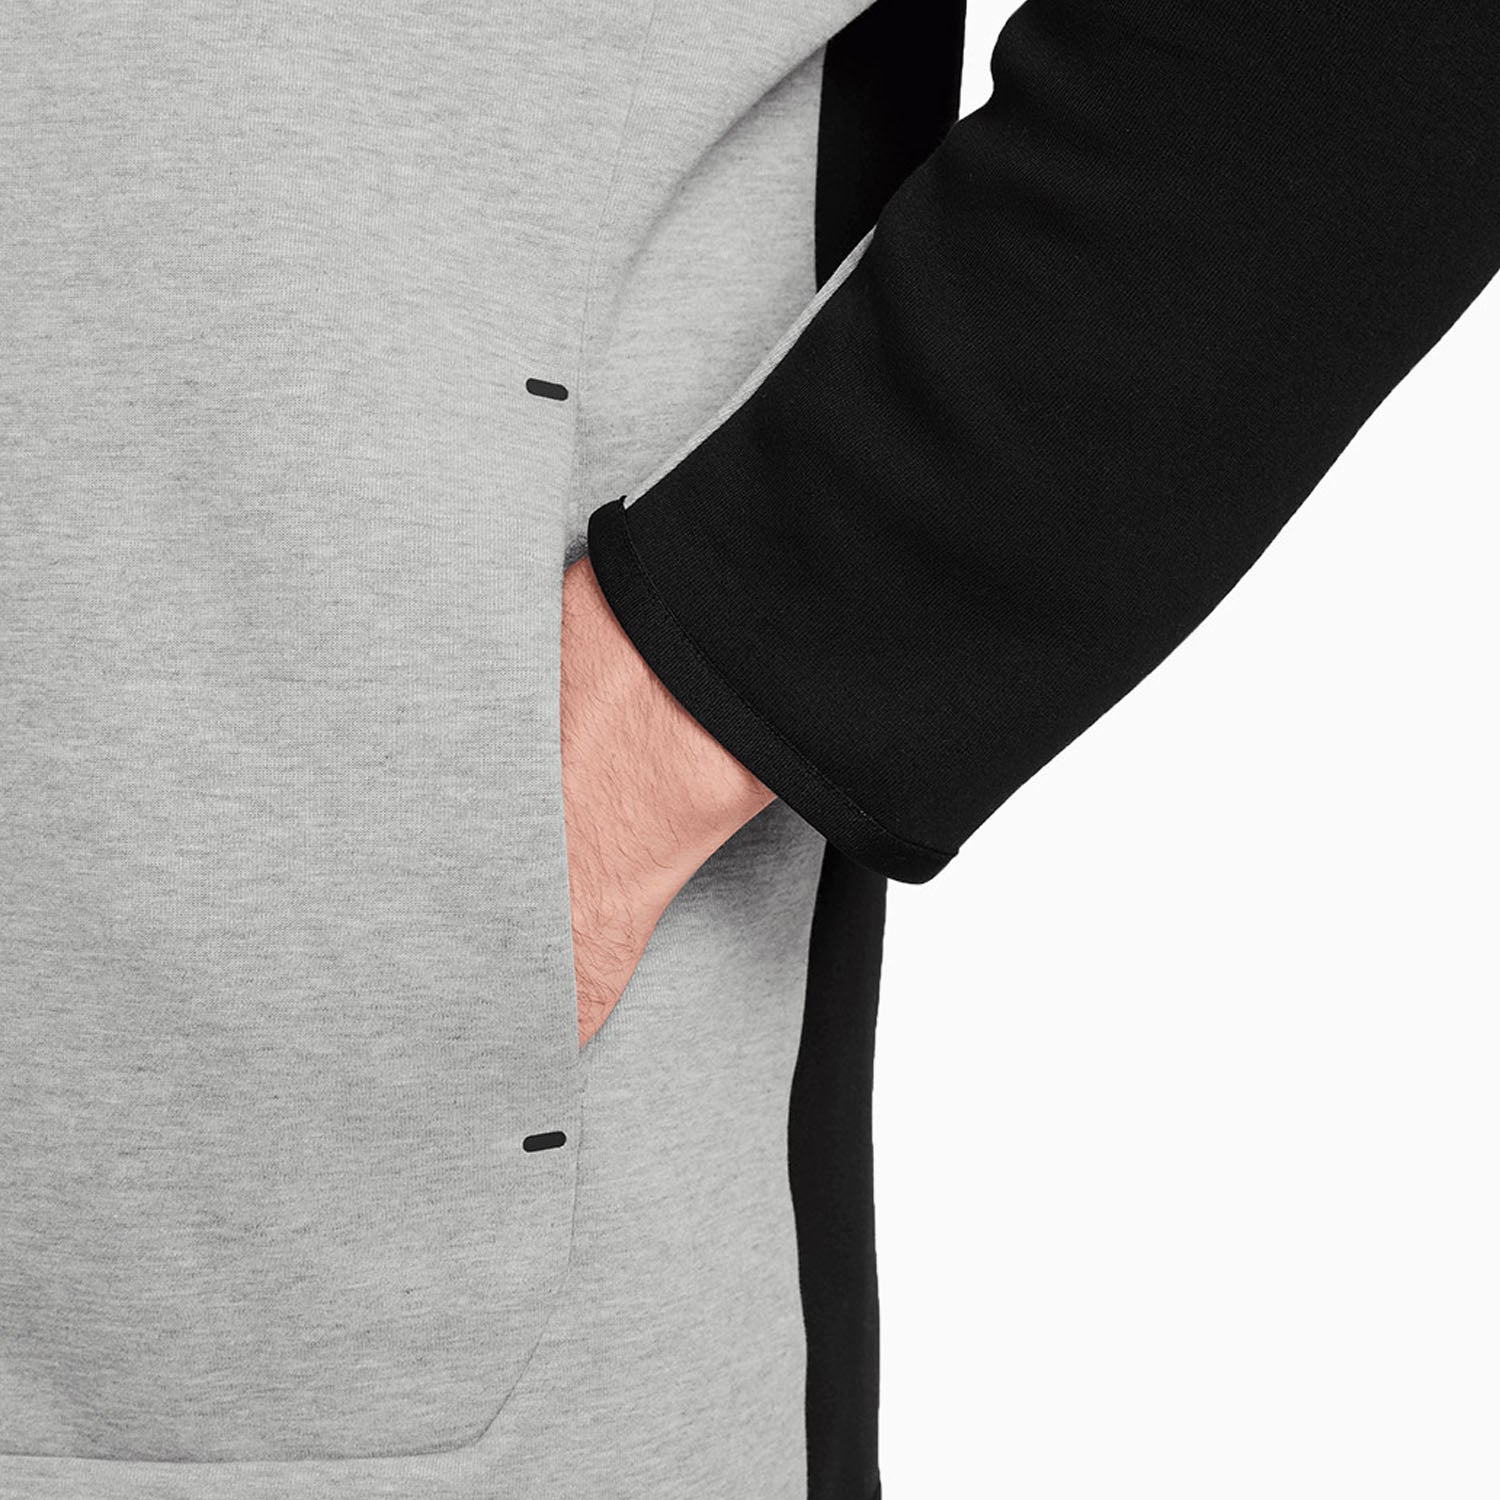 nike-mens-sportswear-tech-fleece-zip-up-hoodie-cu4489-016